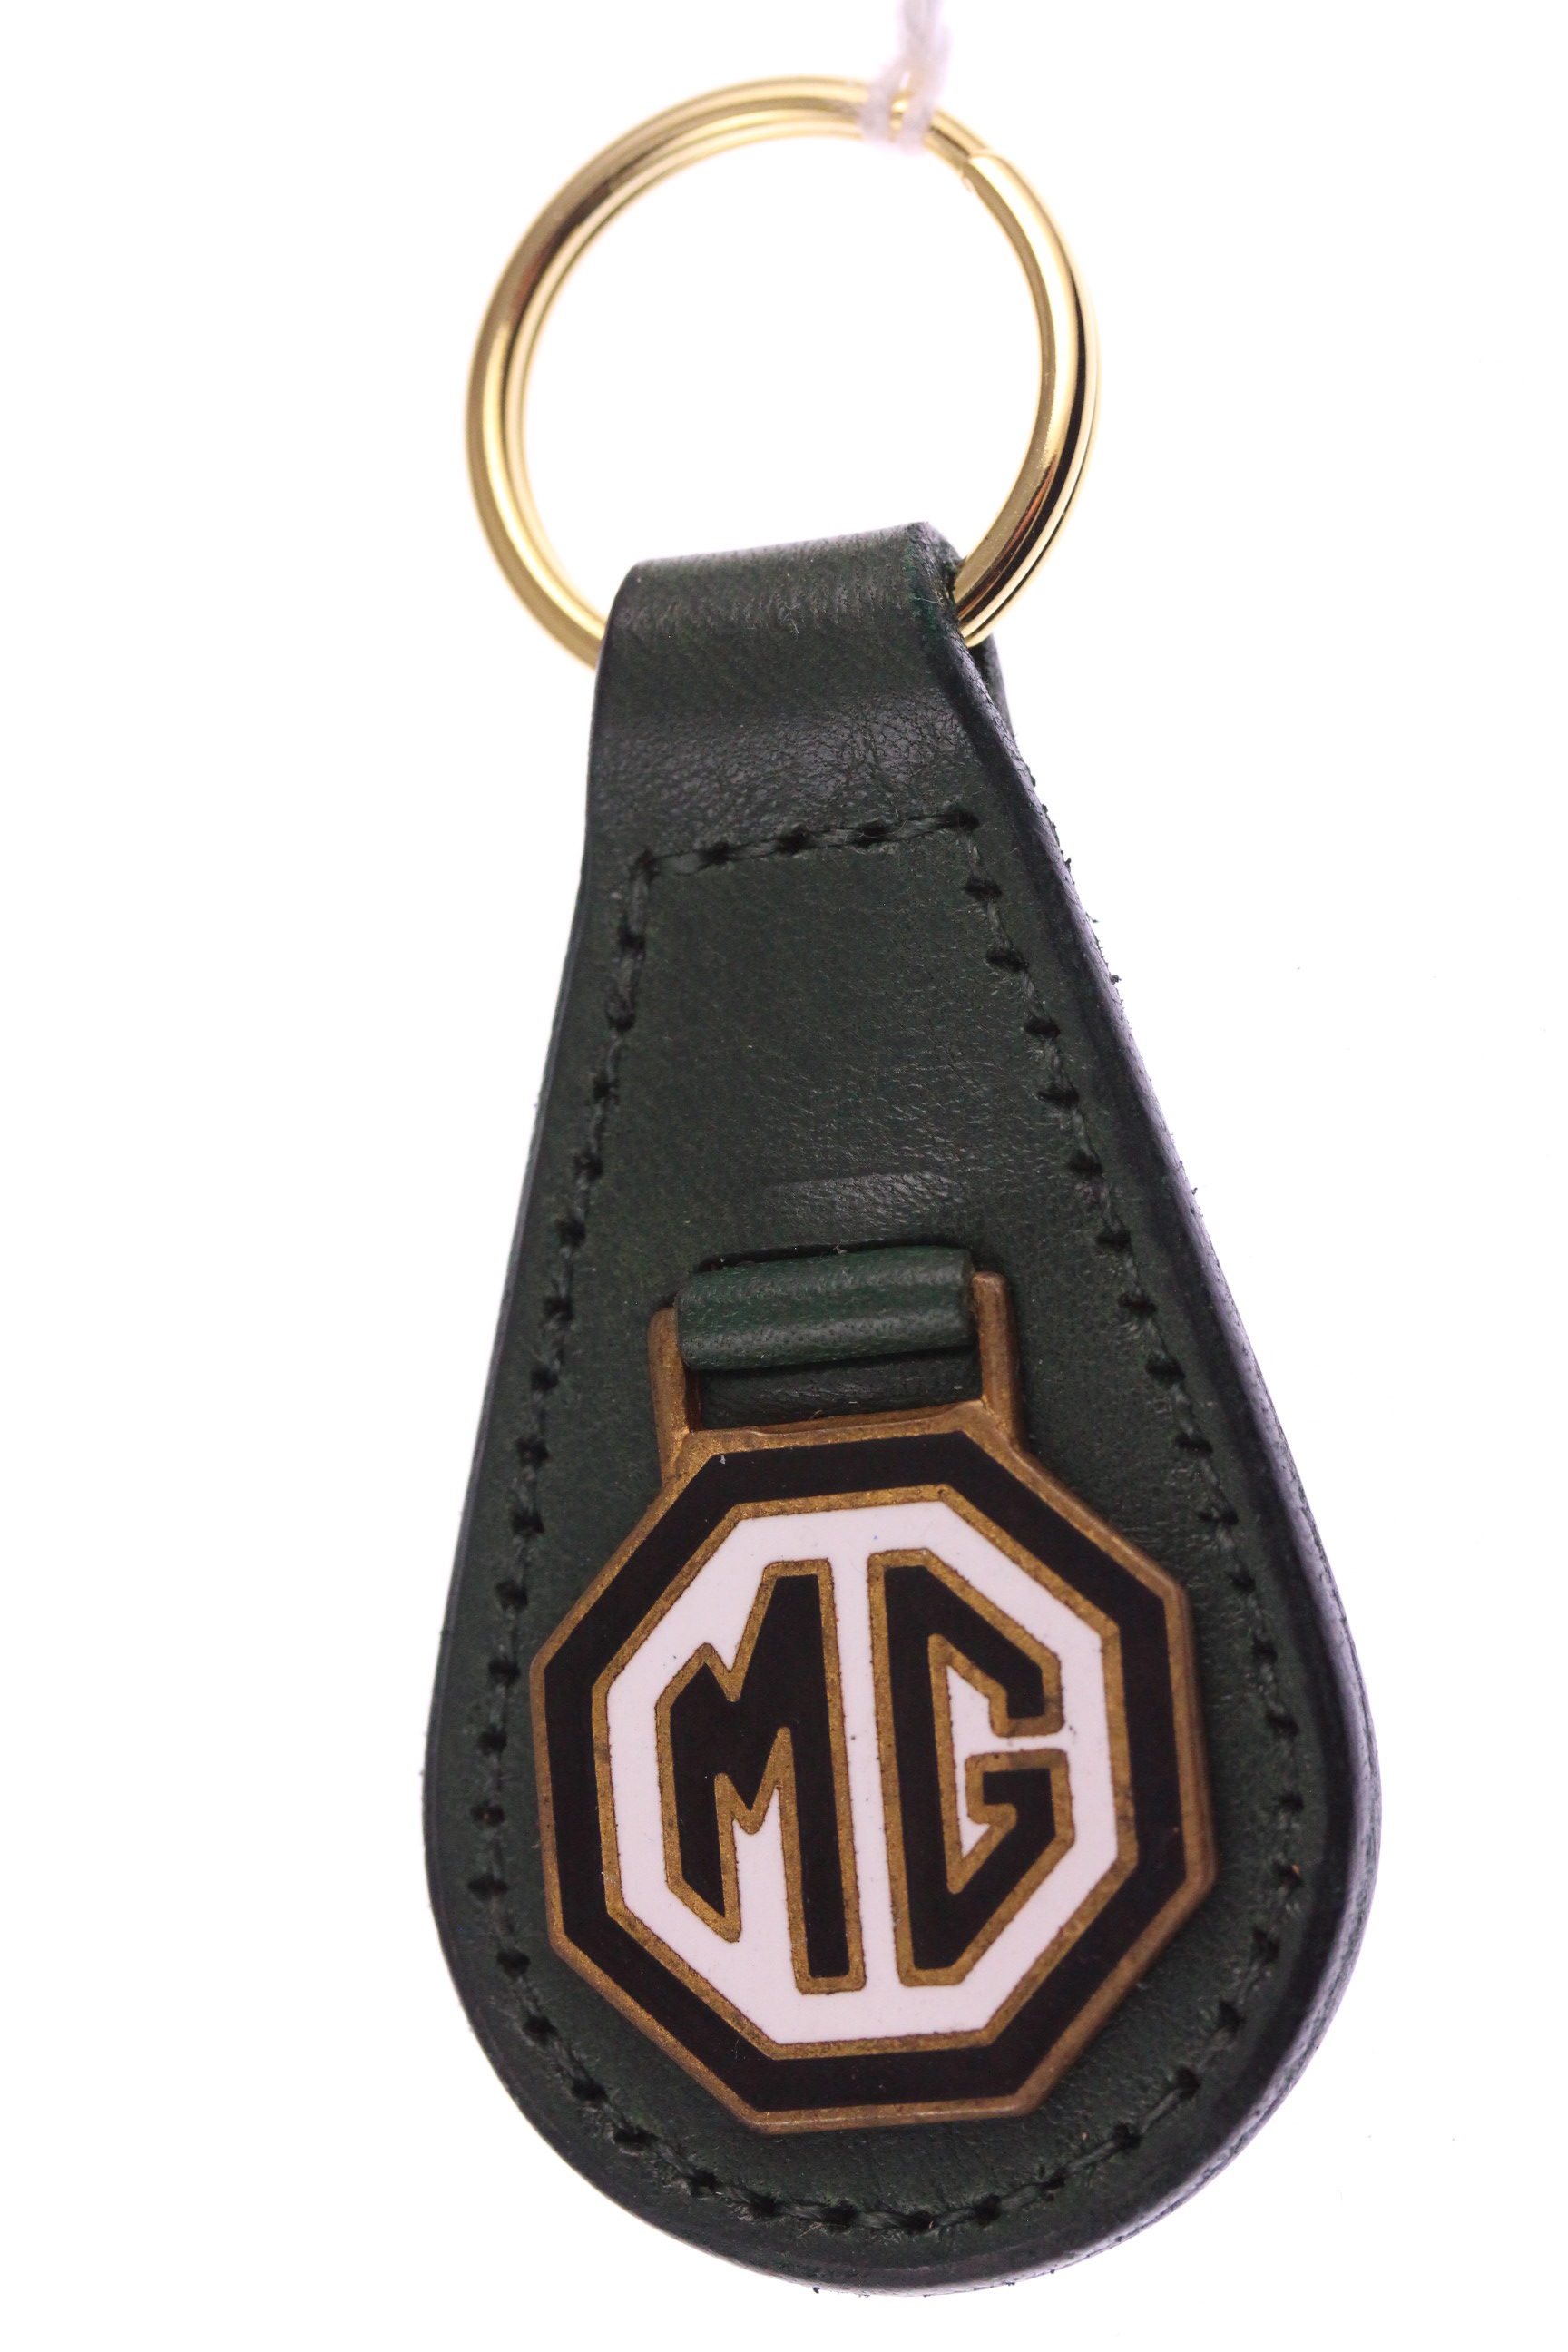 MG ( MGA ) – original vintage 1960s vitreous enamel on gilt badge ...